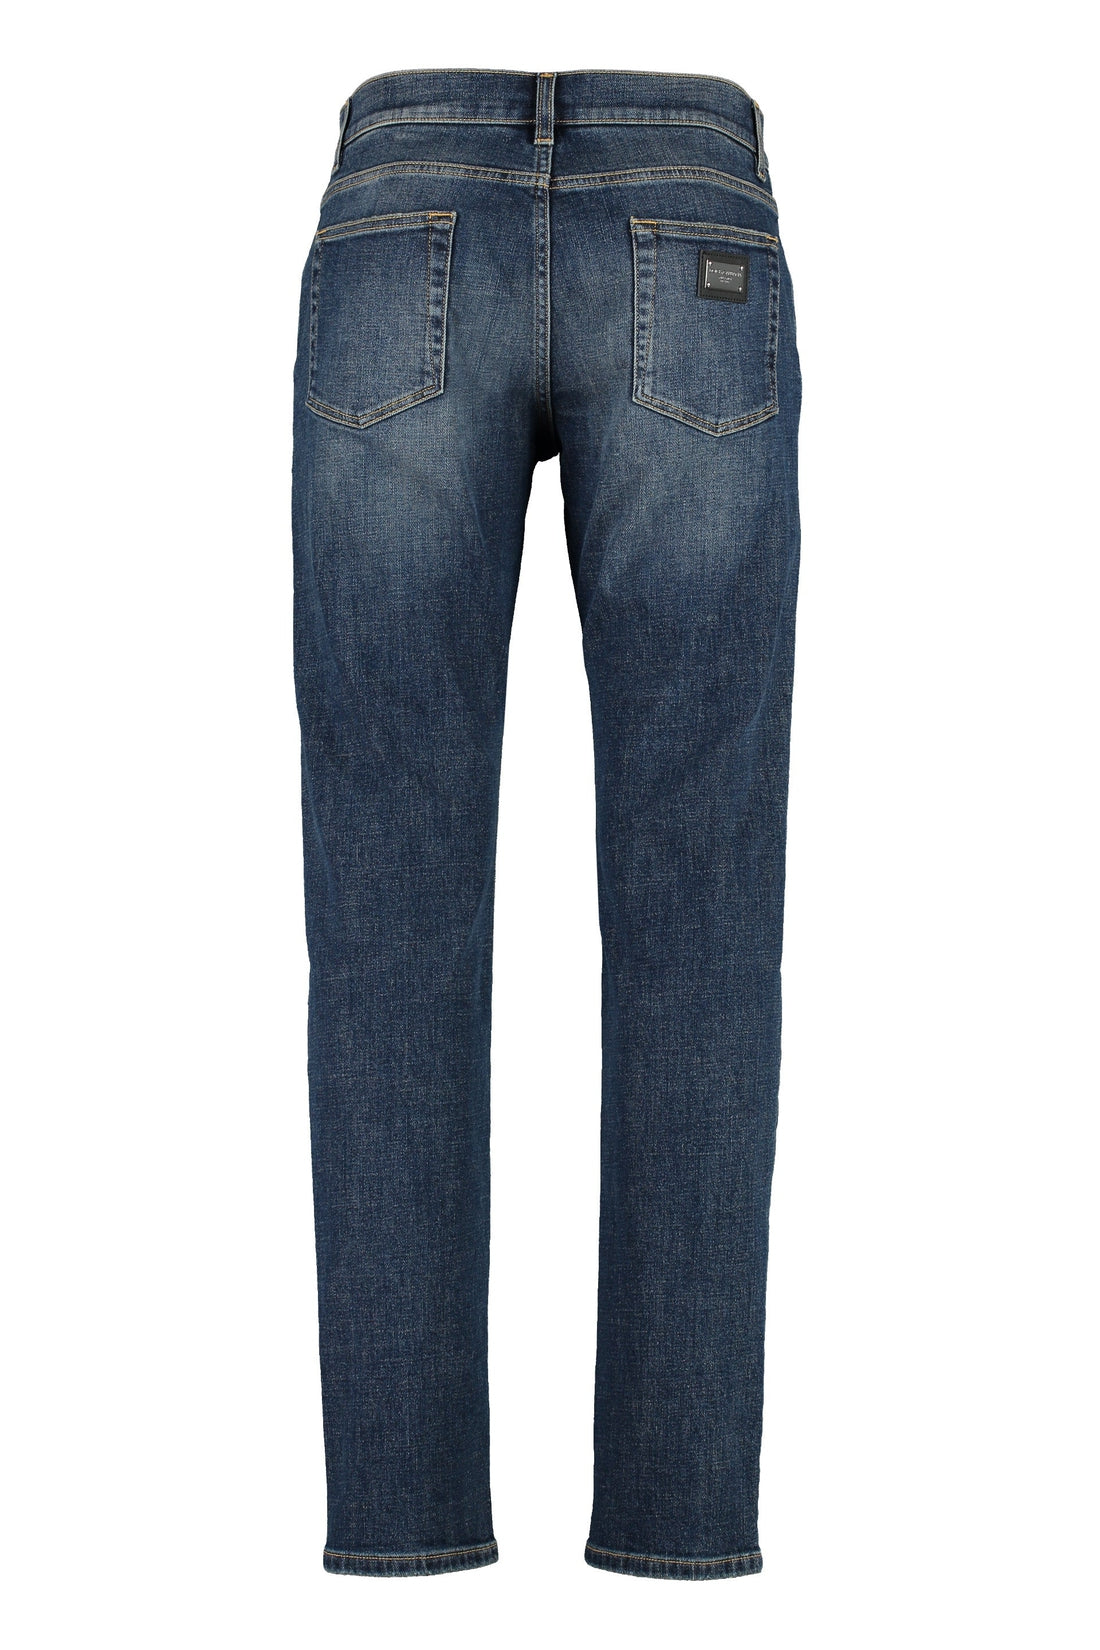 Dolce & Gabbana-OUTLET-SALE-Slim fit jeans-ARCHIVIST